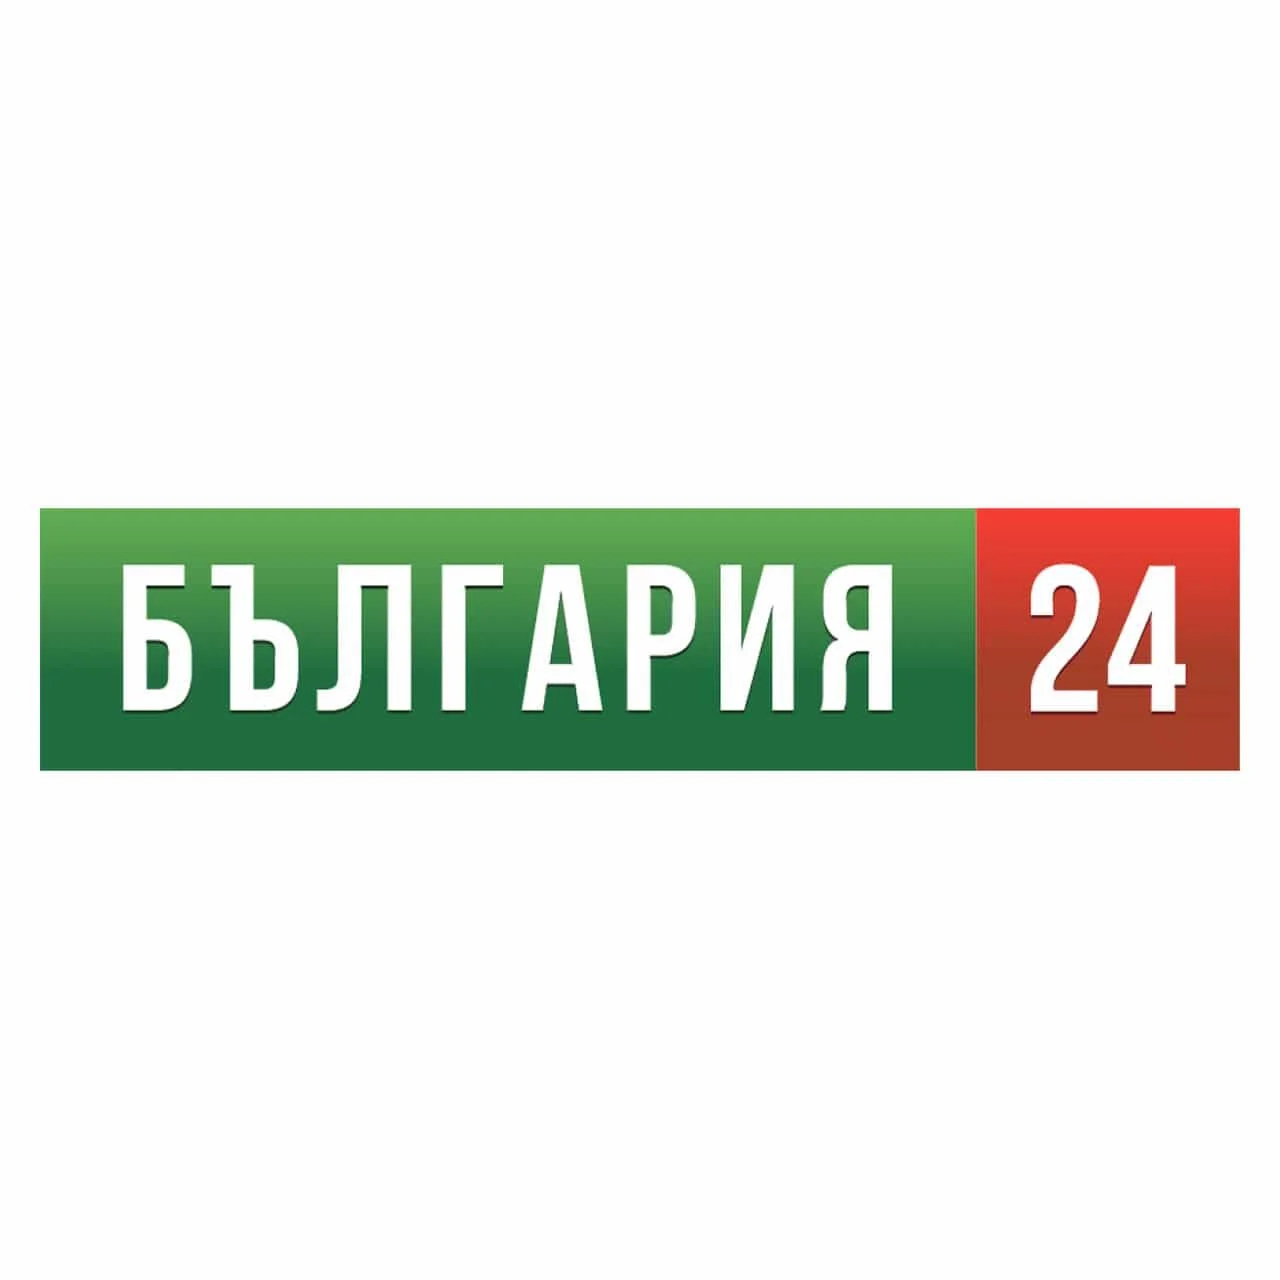 Bulgaria 24 TV